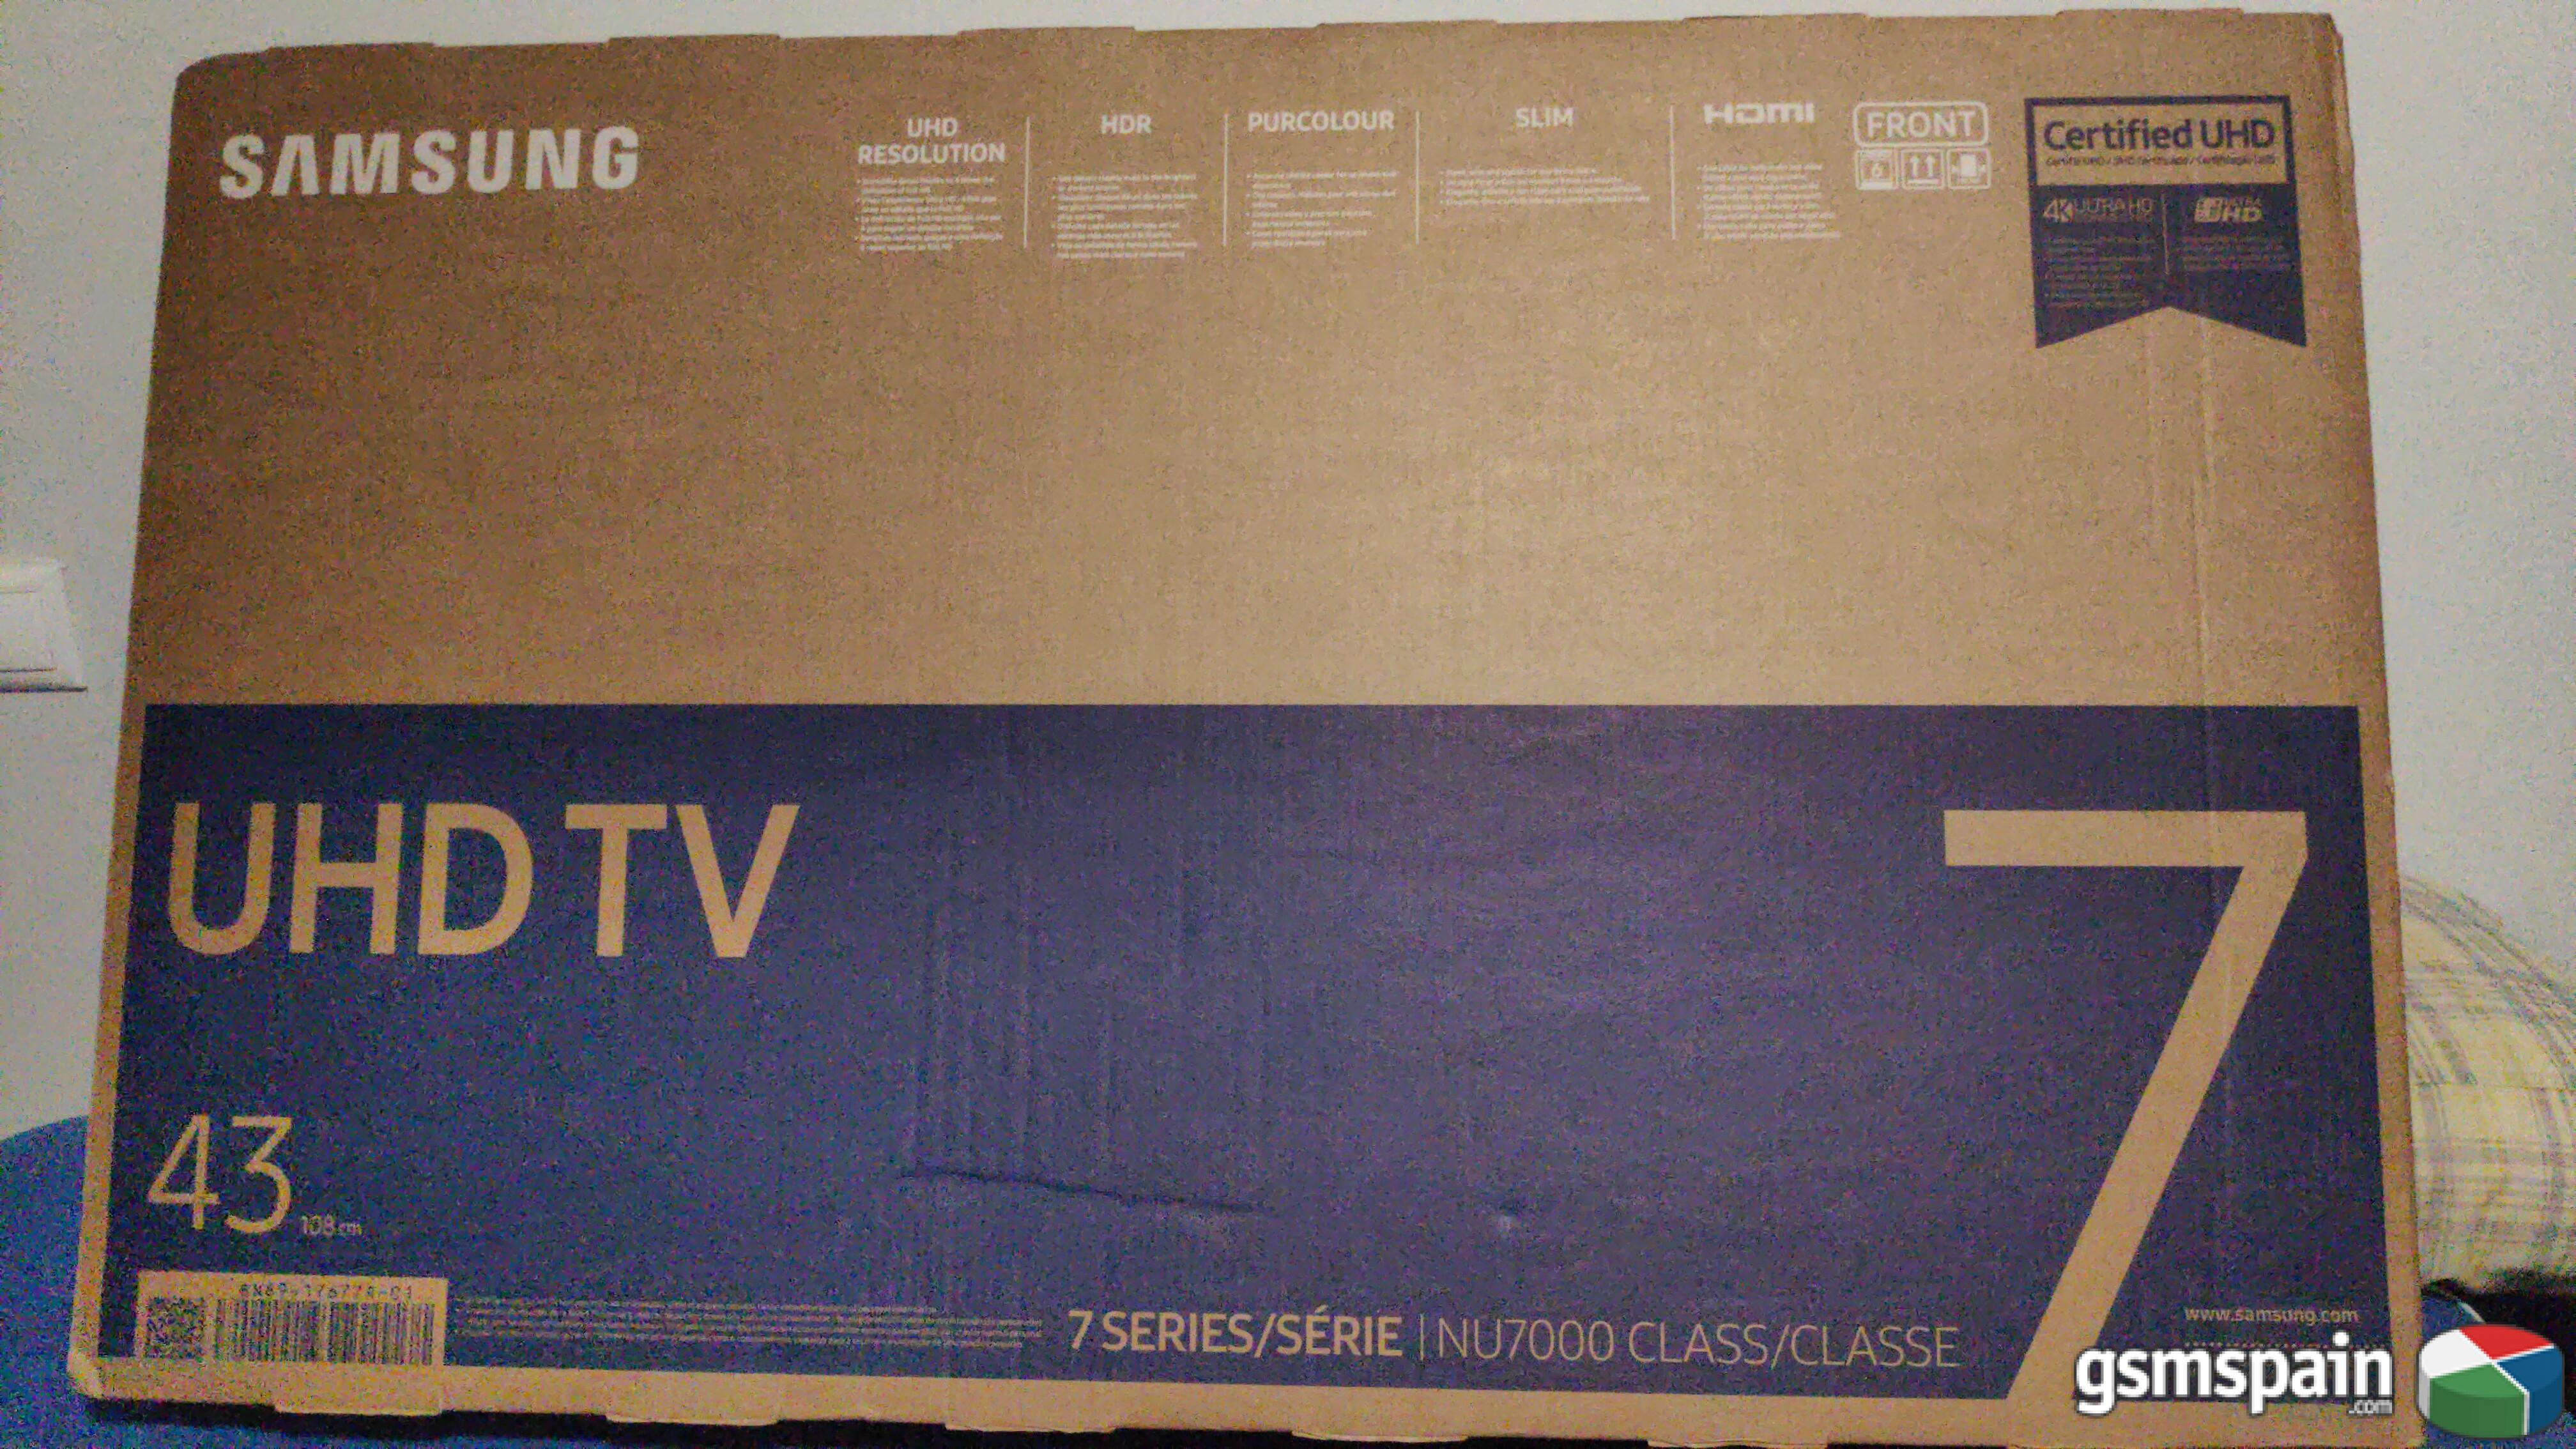 Nueva promo con el S10+ TV de regalo...